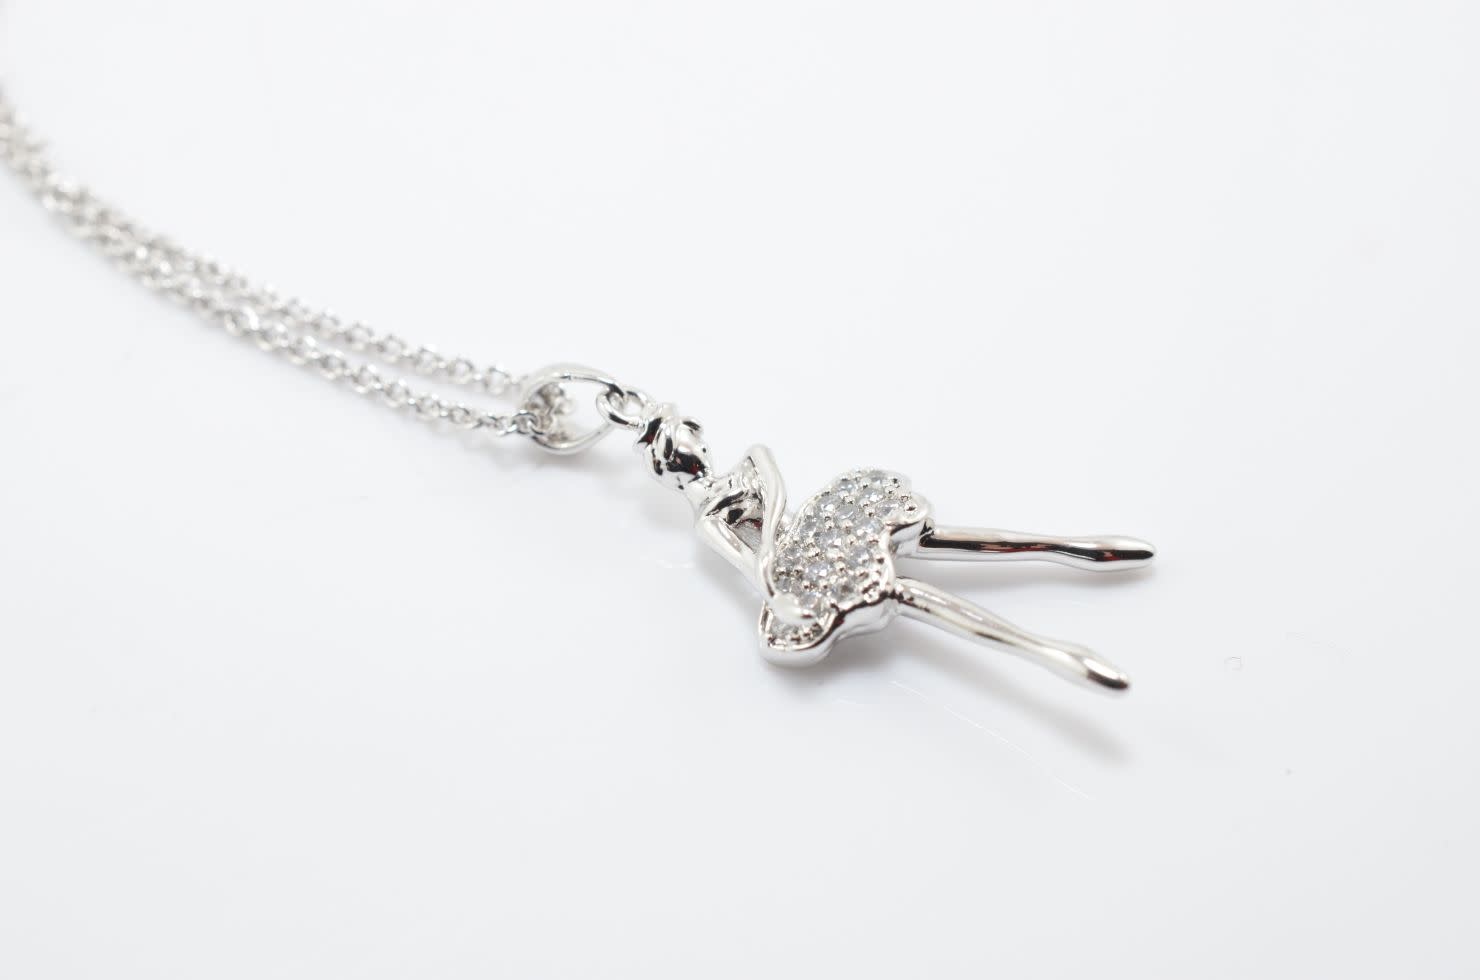 "Ballerina" necklace, Yunie N060325E